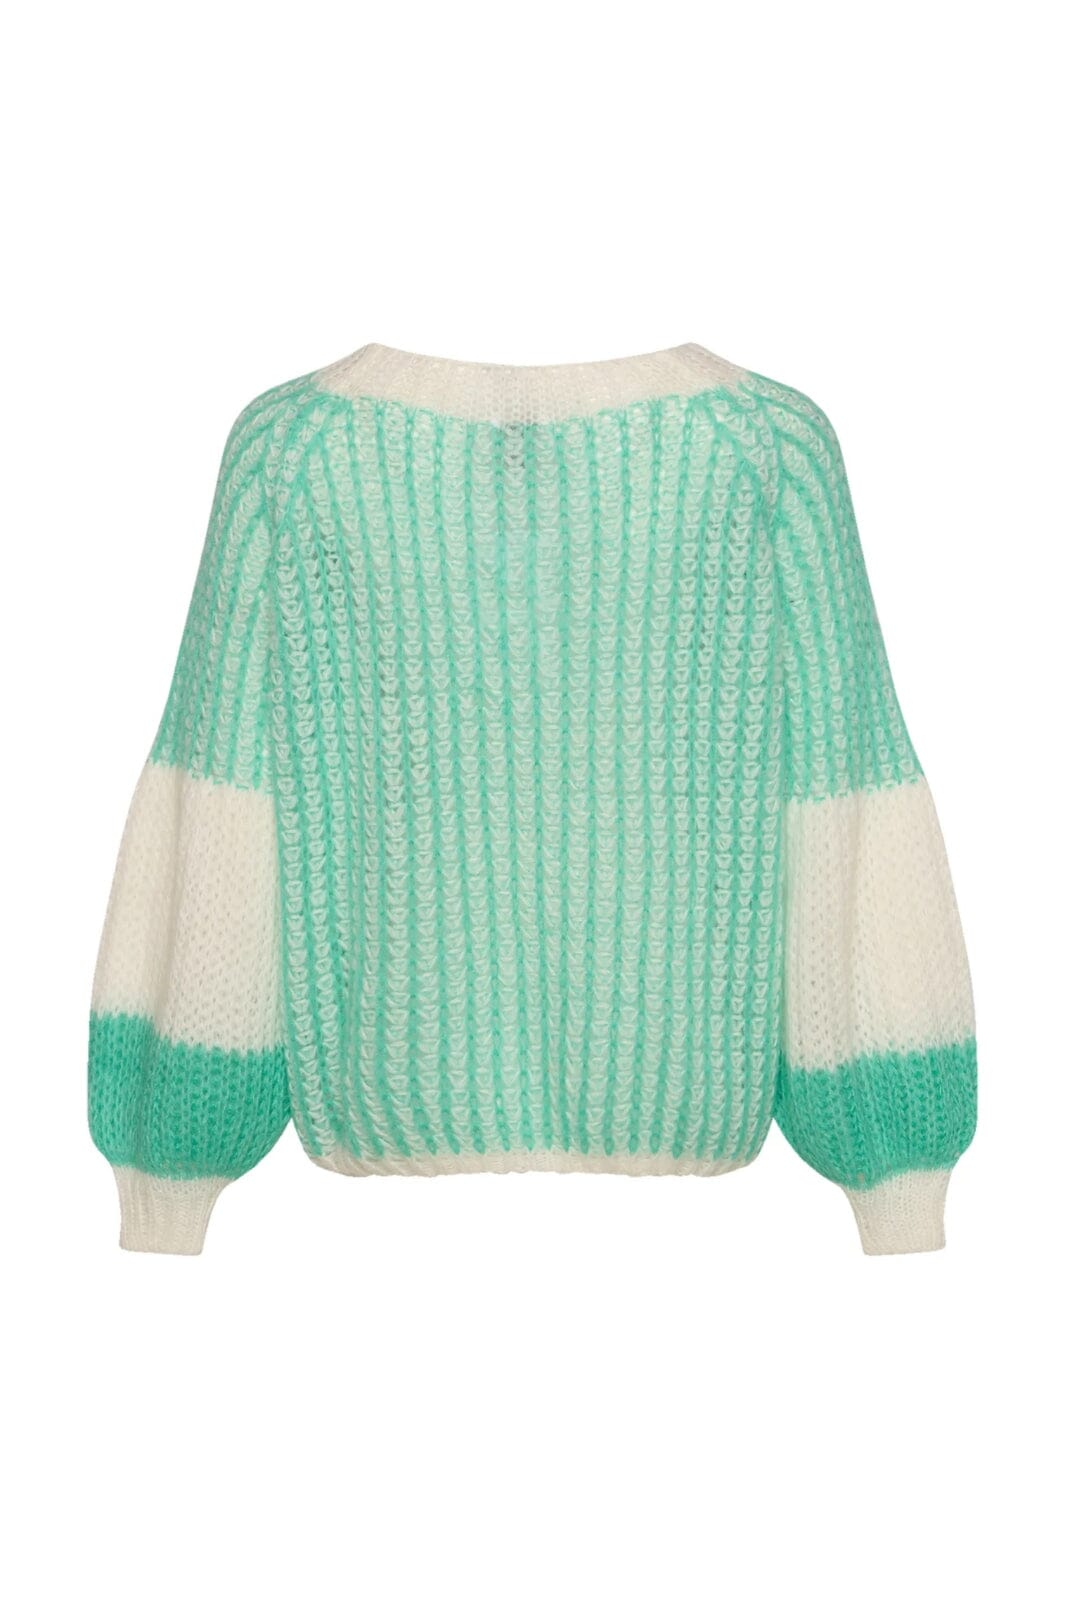 Noella - Liana Knit Sweater - Mint/White 